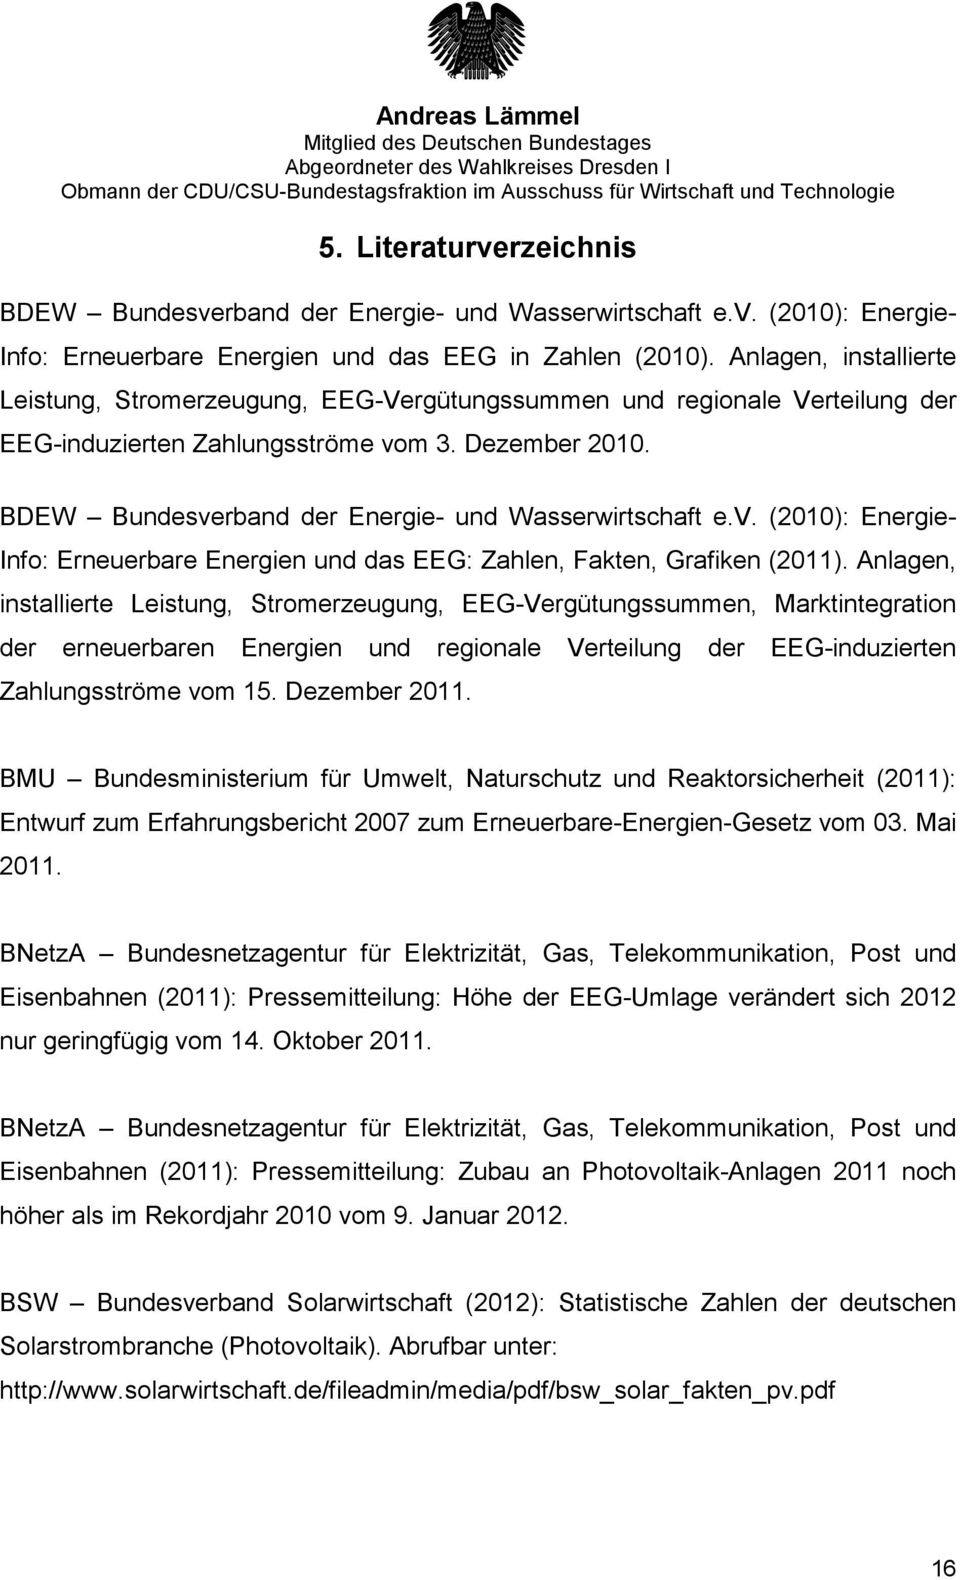 BDEW Bundesverband der Energie- und Wasserwirtschaft e.v. (2010): Energie- Info: Erneuerbare Energien und das EEG: Zahlen, Fakten, Grafiken (2011).